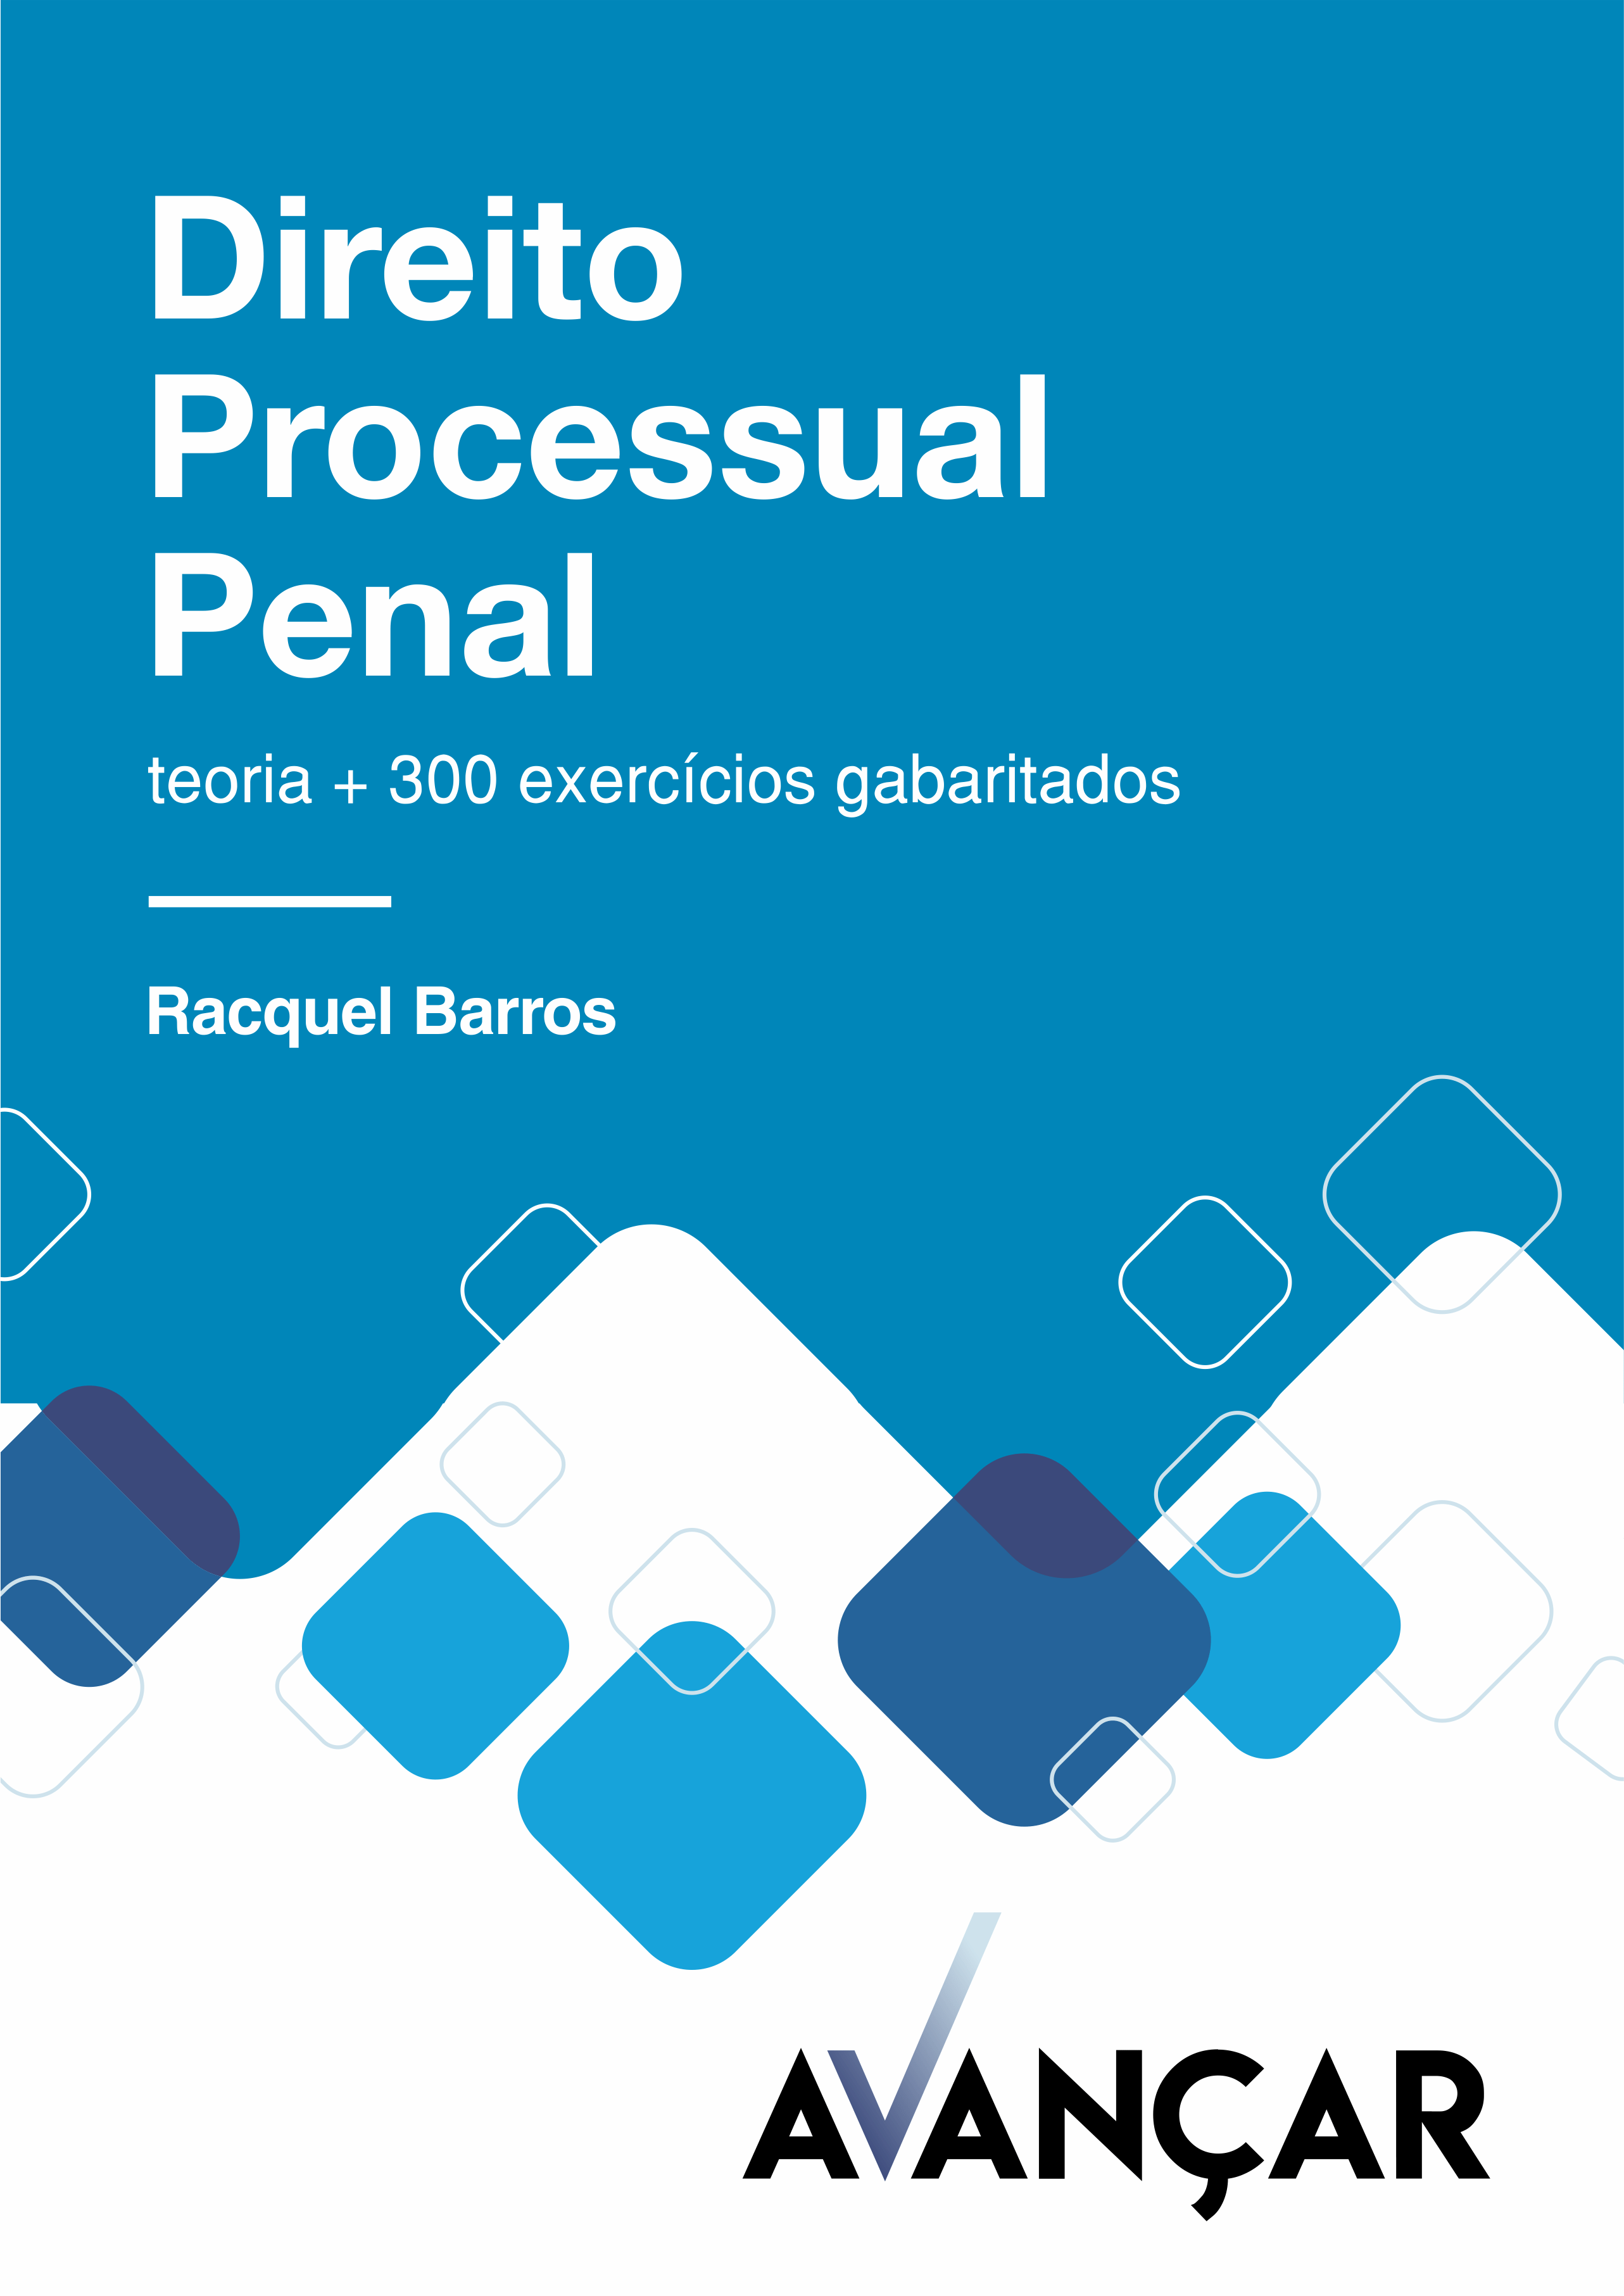 Direito Processual Penal para o Tribunal de Justiça do Estado do Rio de Janeiro